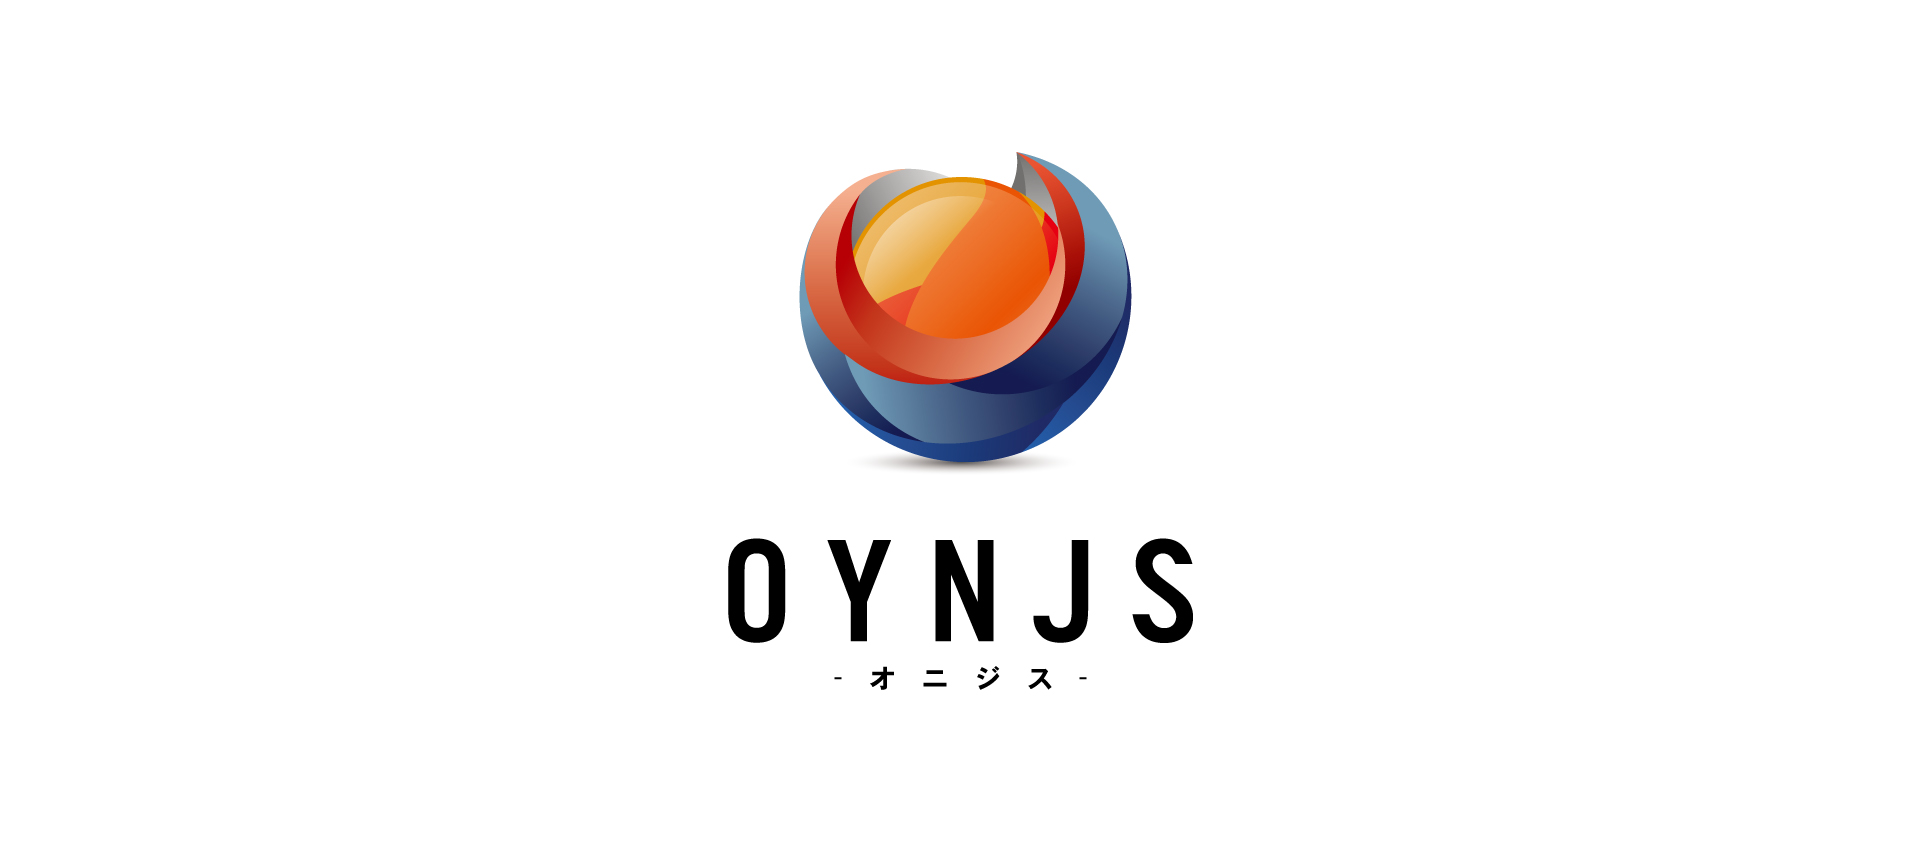 グラフィック-OYNJSの画像